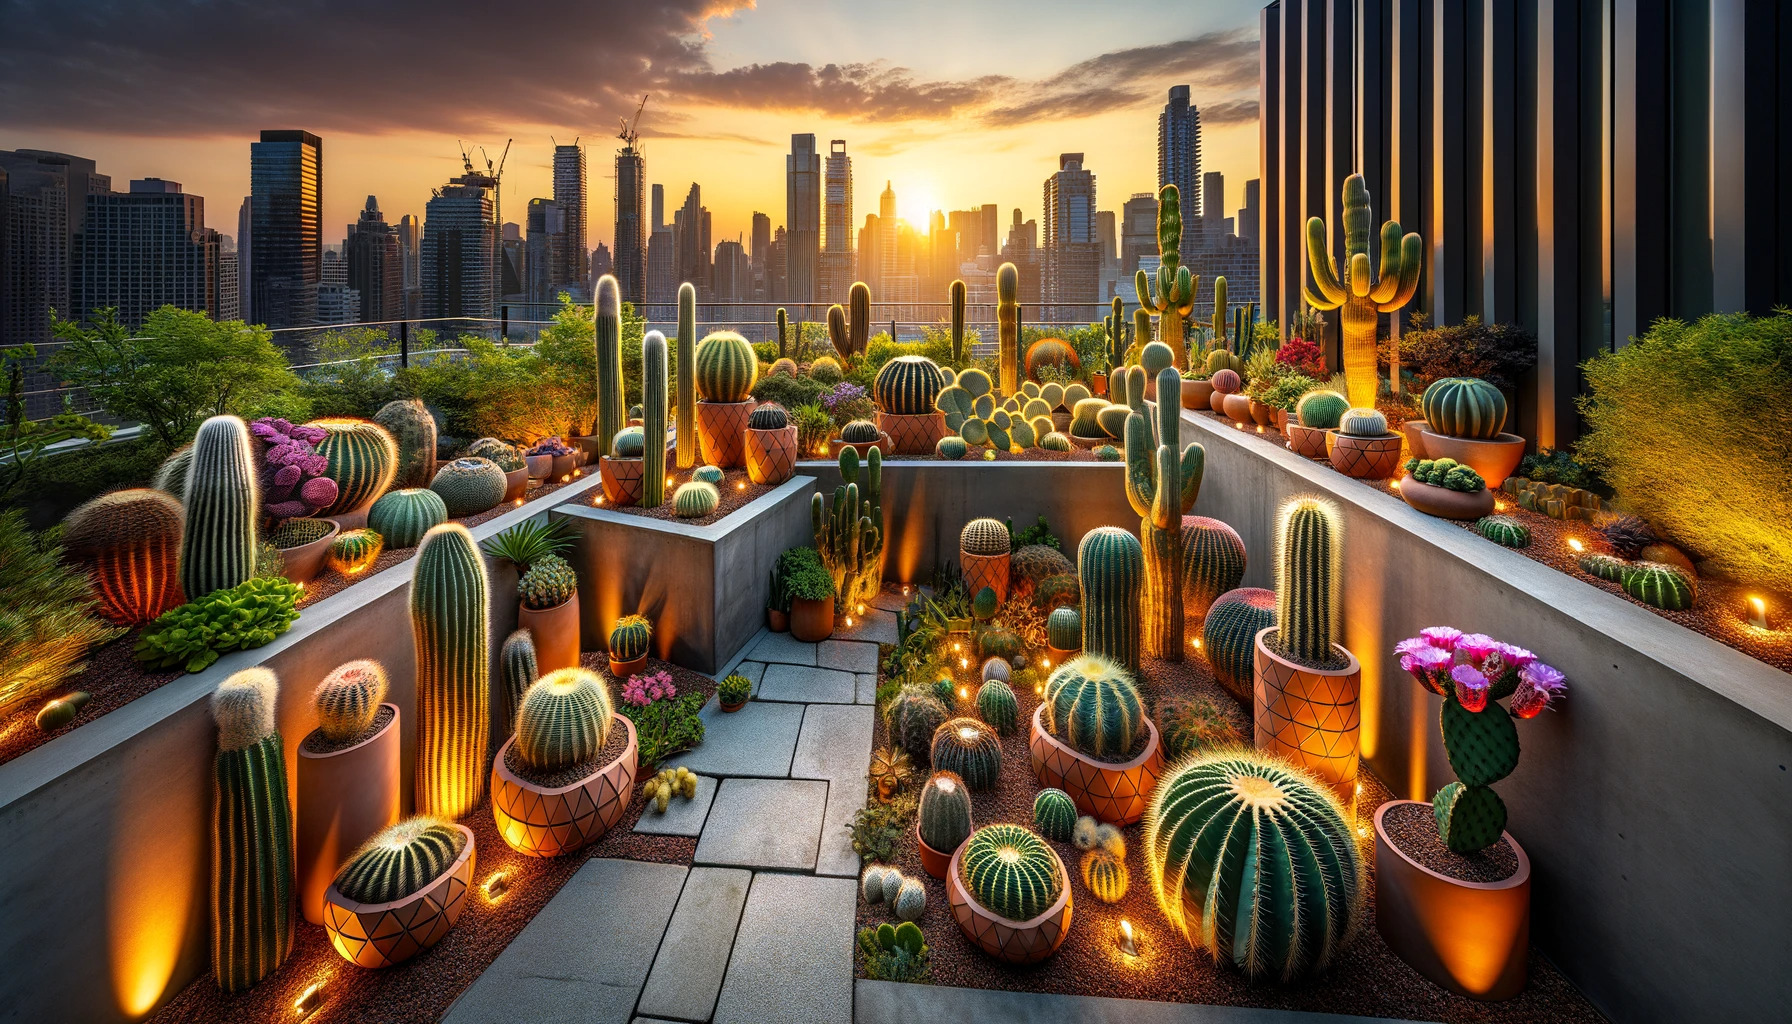 The Future of Cactus Habitats